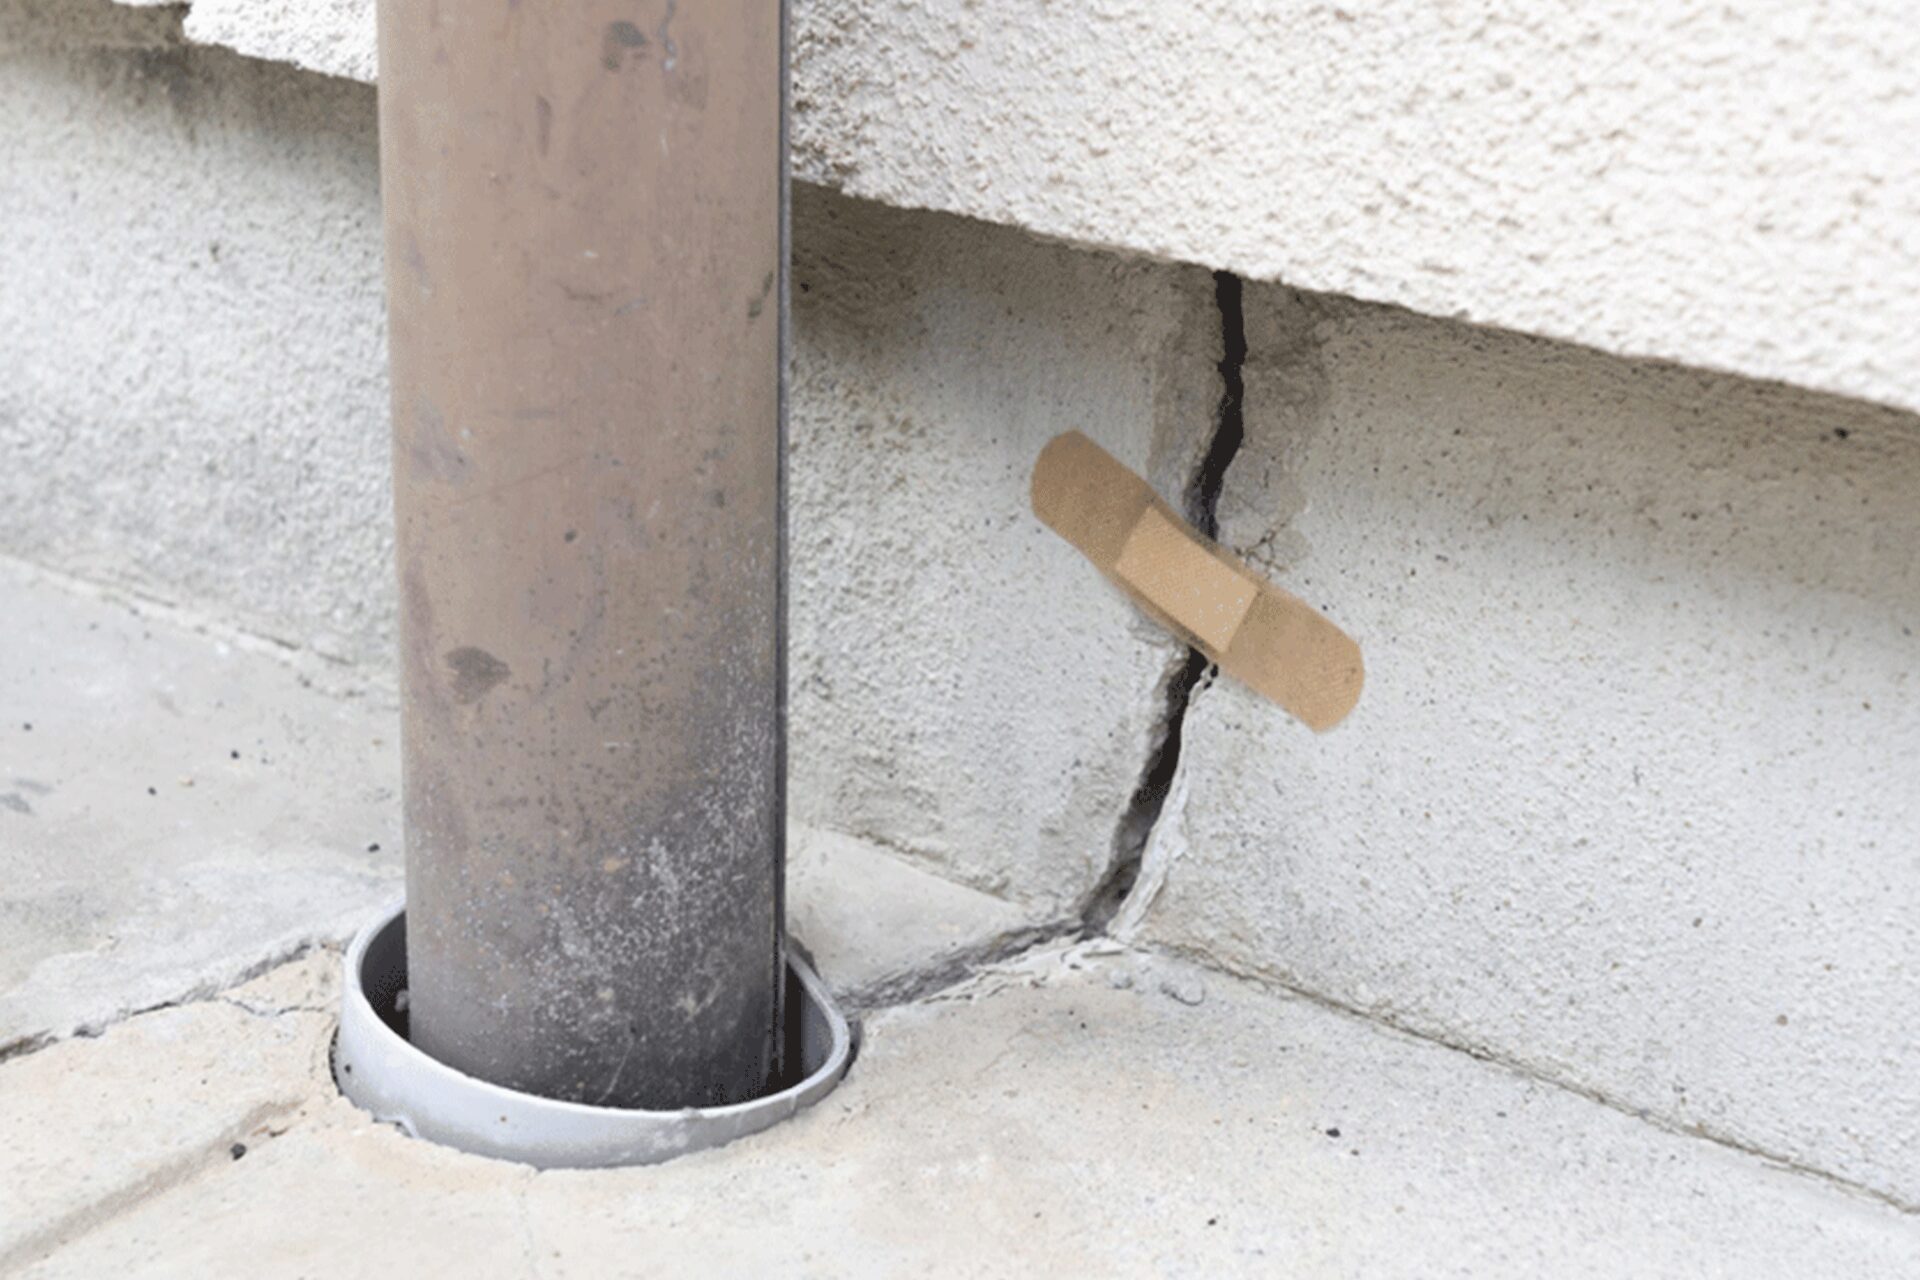 劣化したコンクリートを放置するリスク